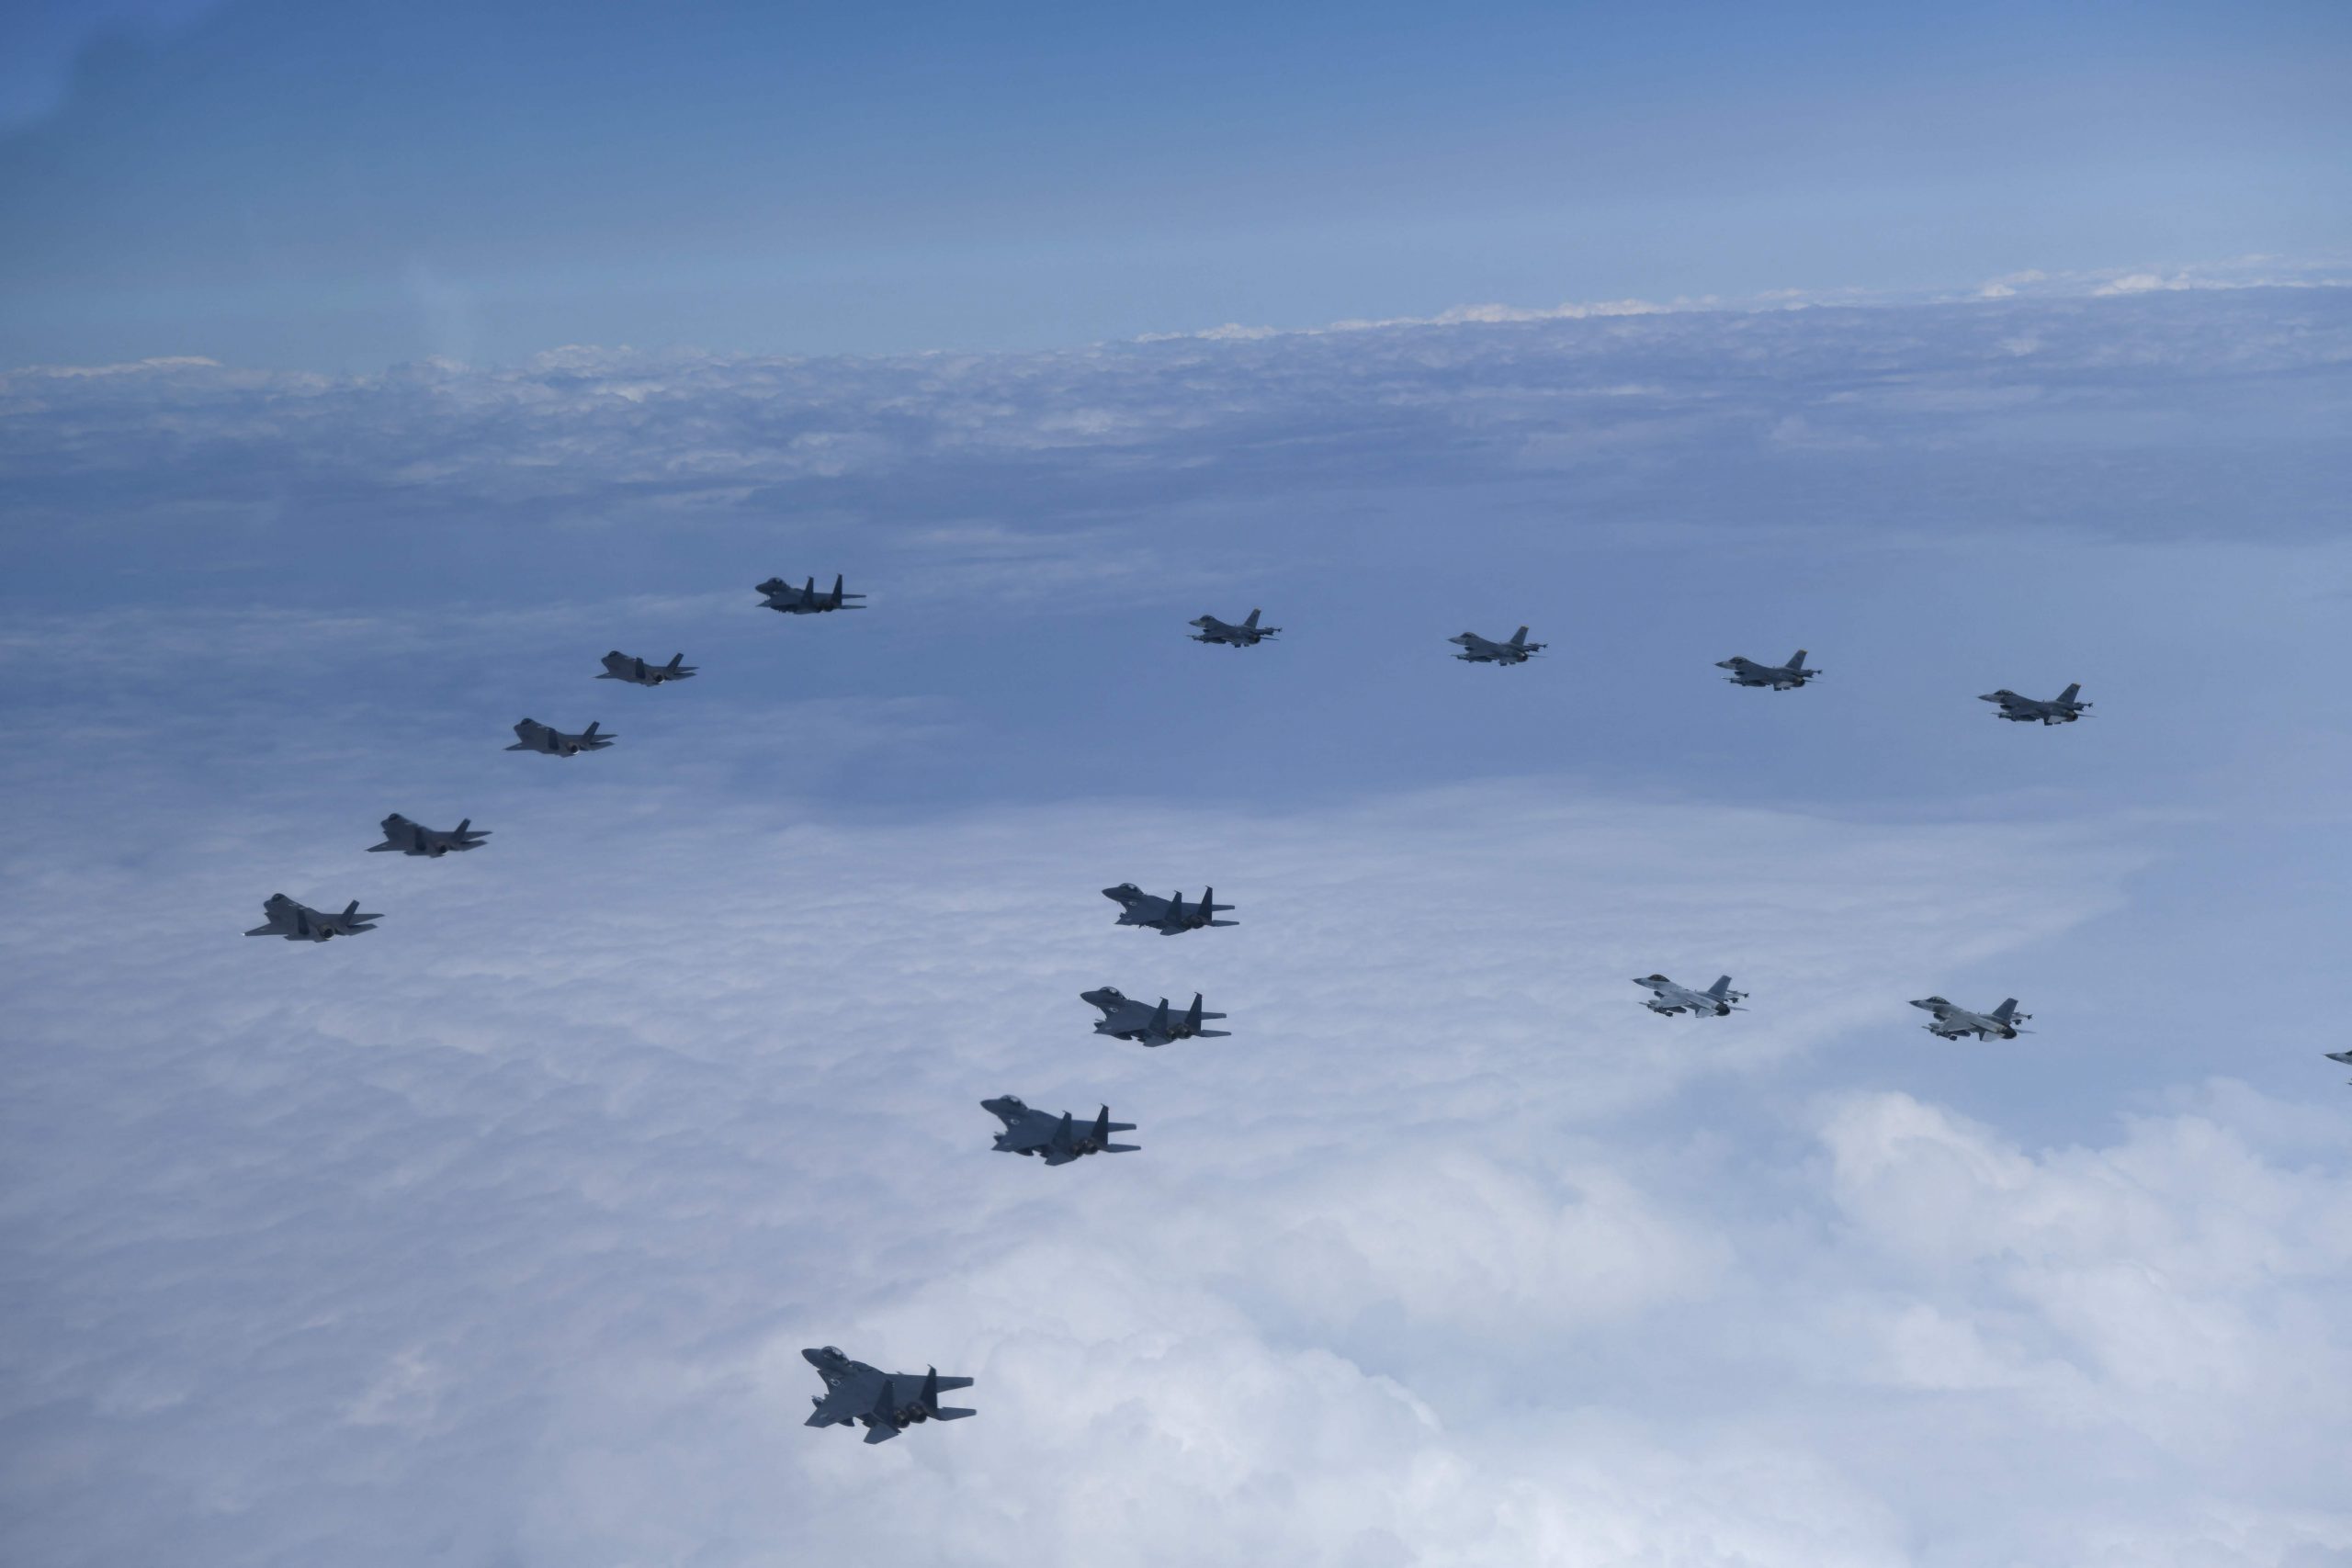 韩美动员20架战机对朝示威飞行